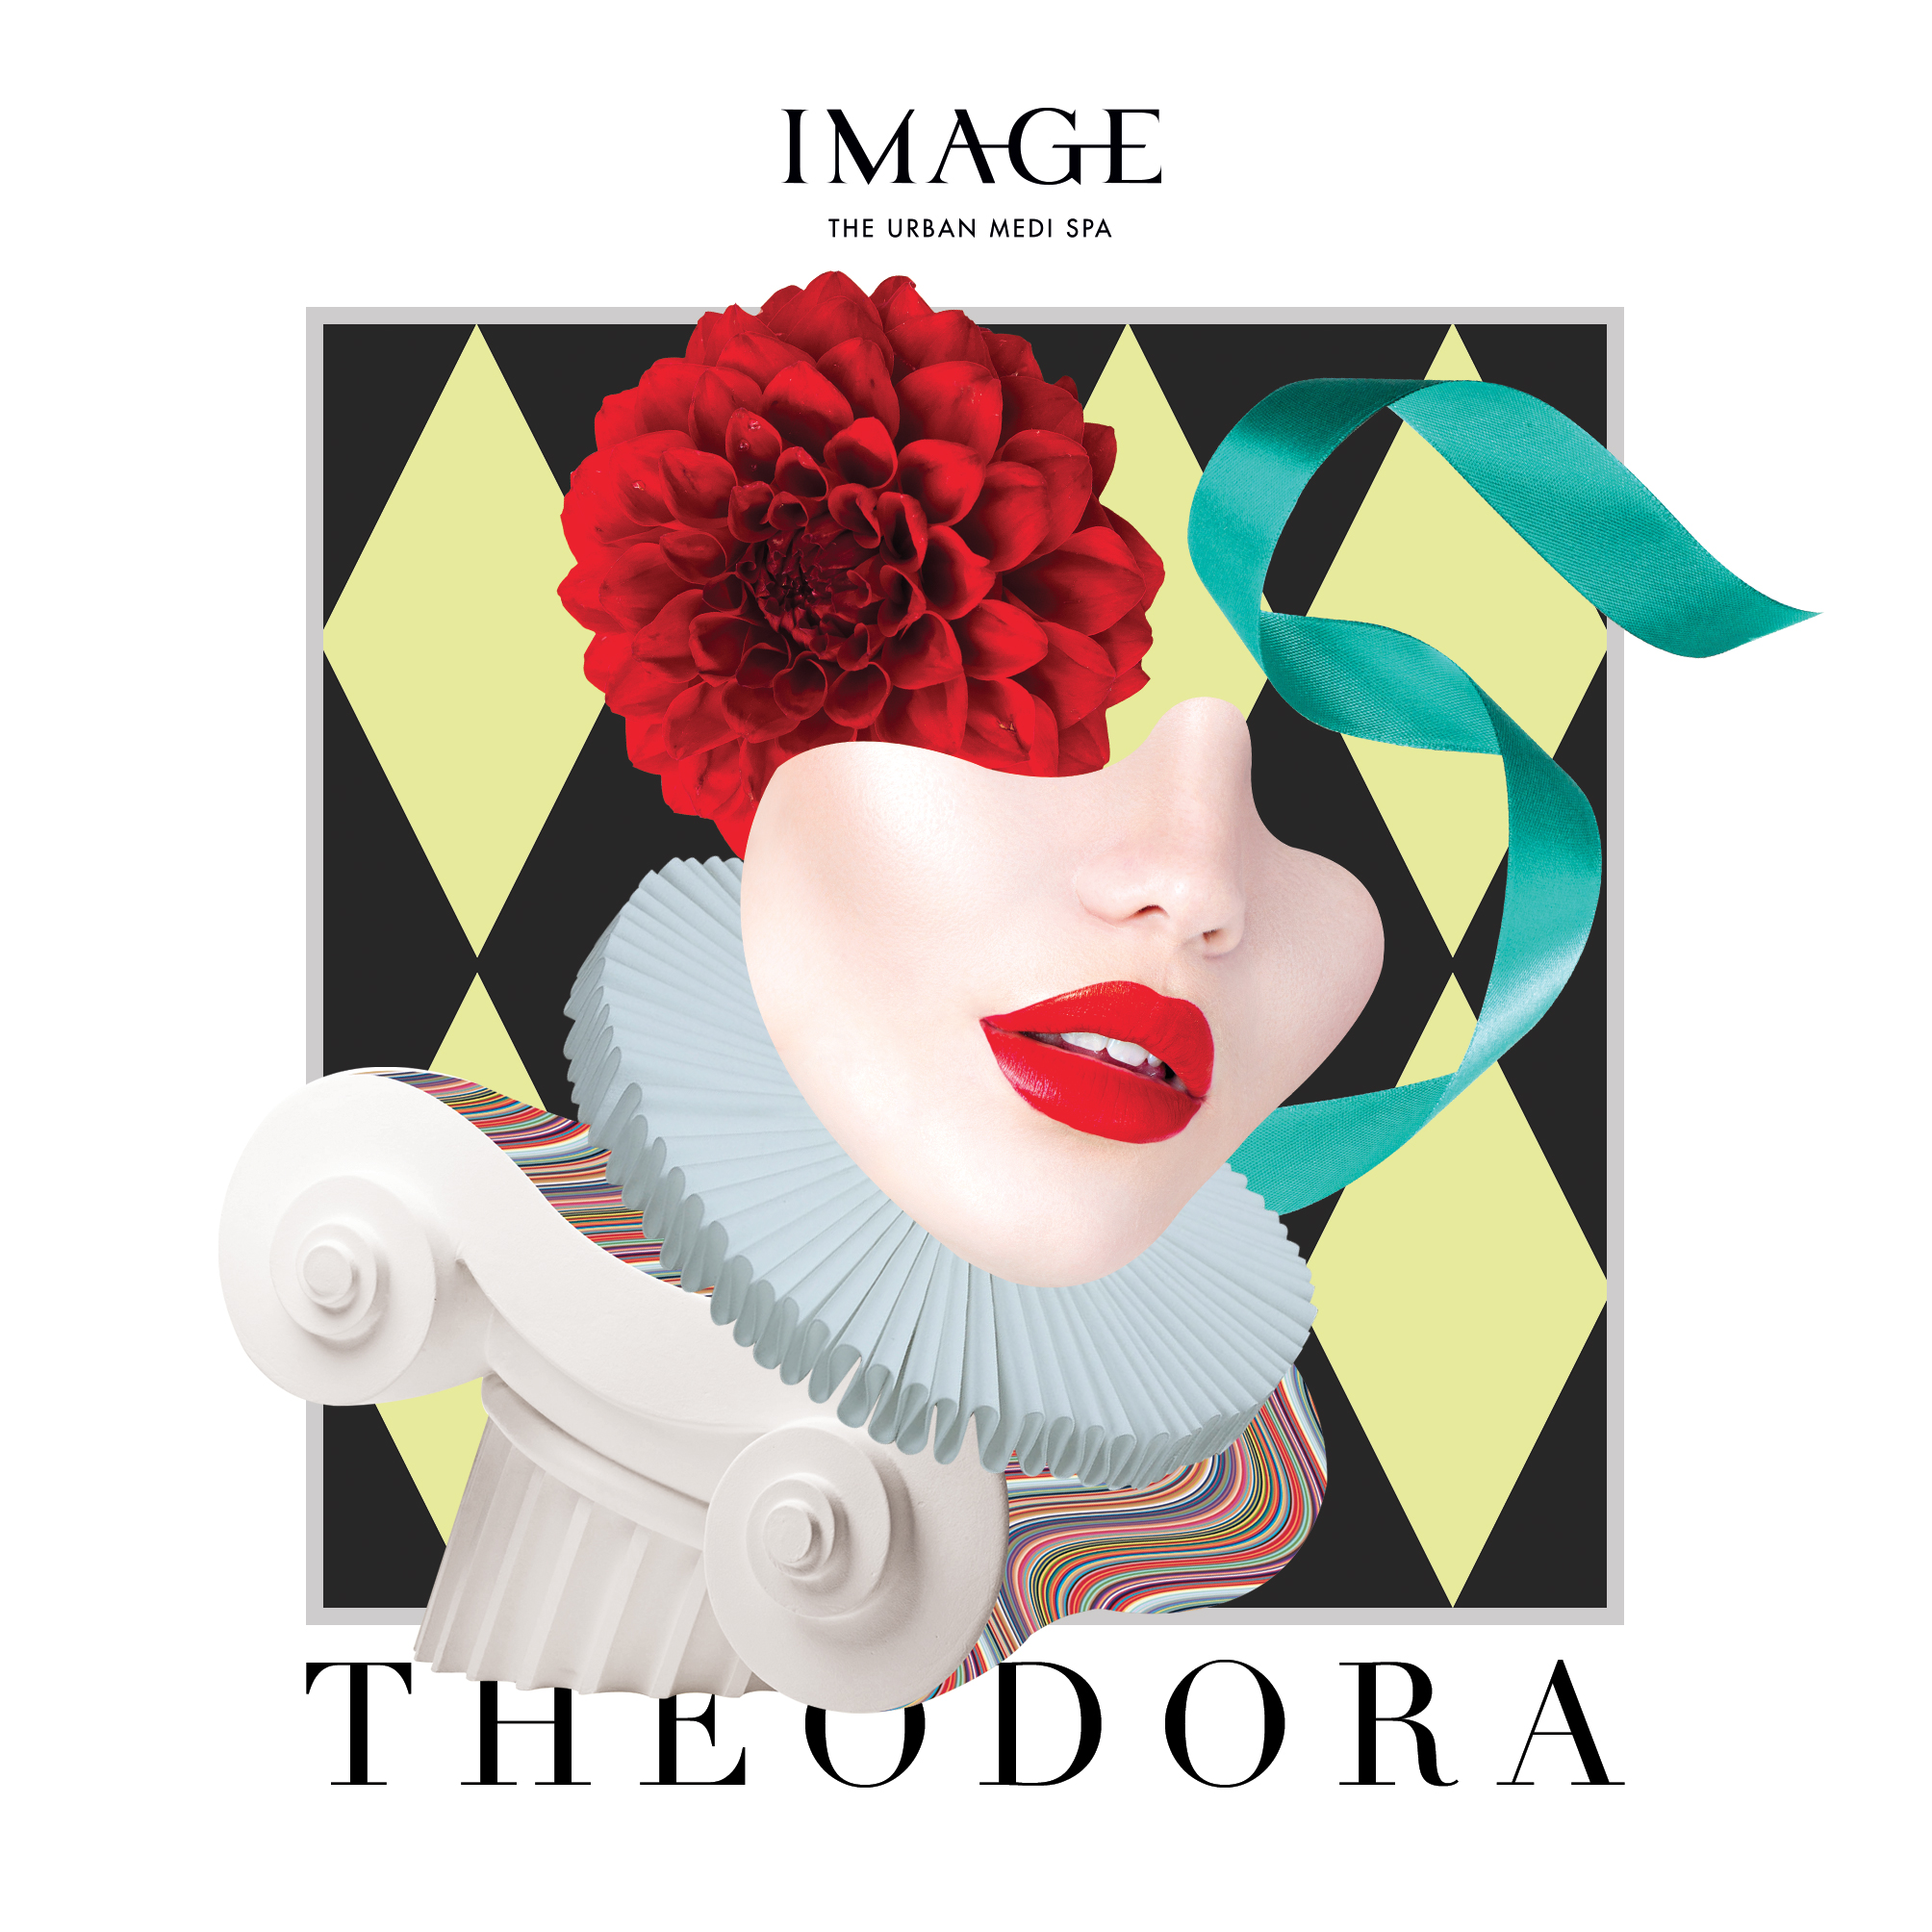 Istituto Image sostiene la Fondazione Theodora Onlus